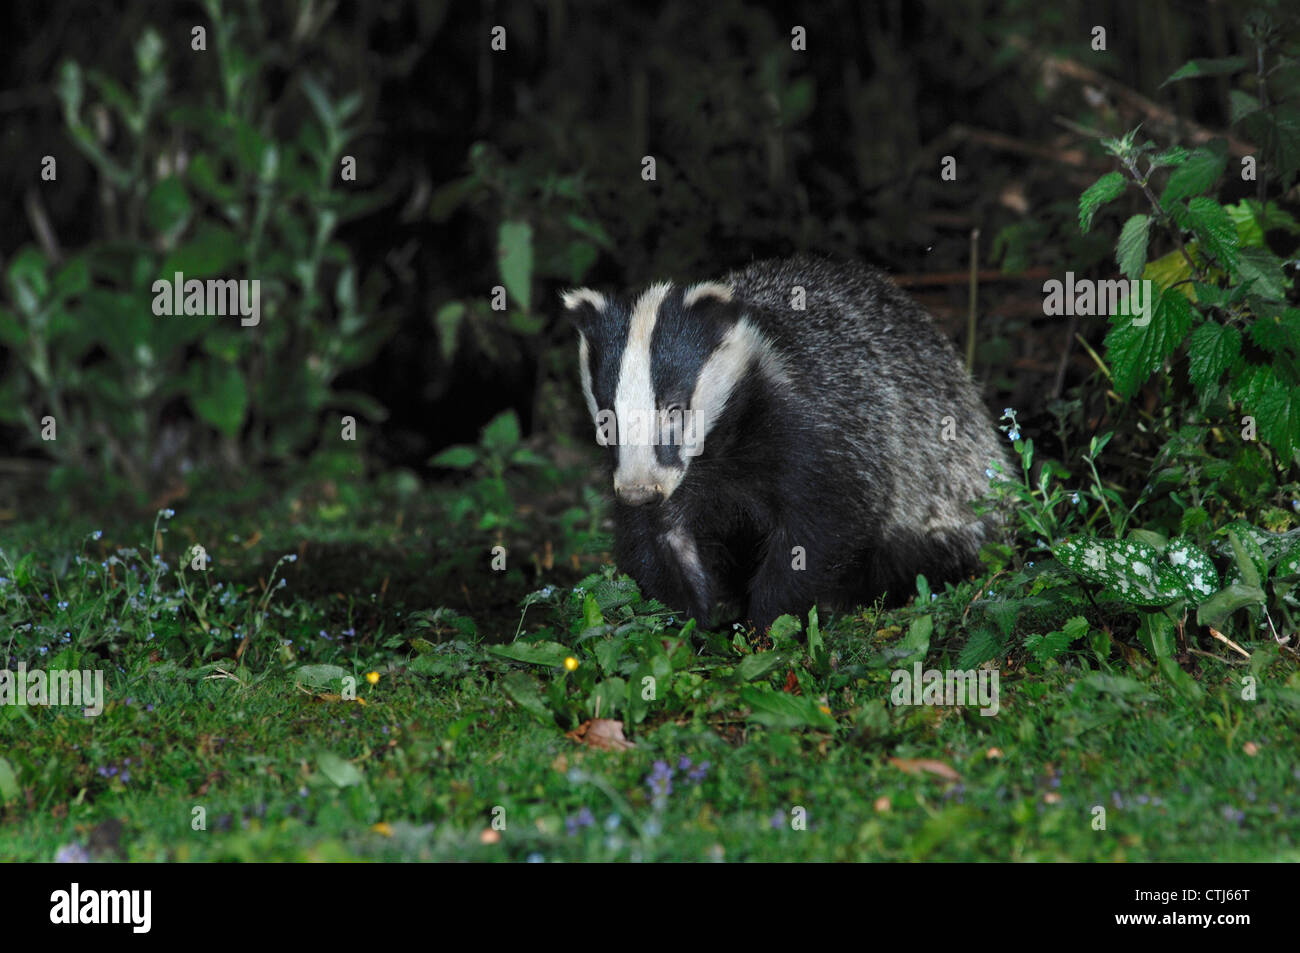 A badger in a garden UK Stock Photo